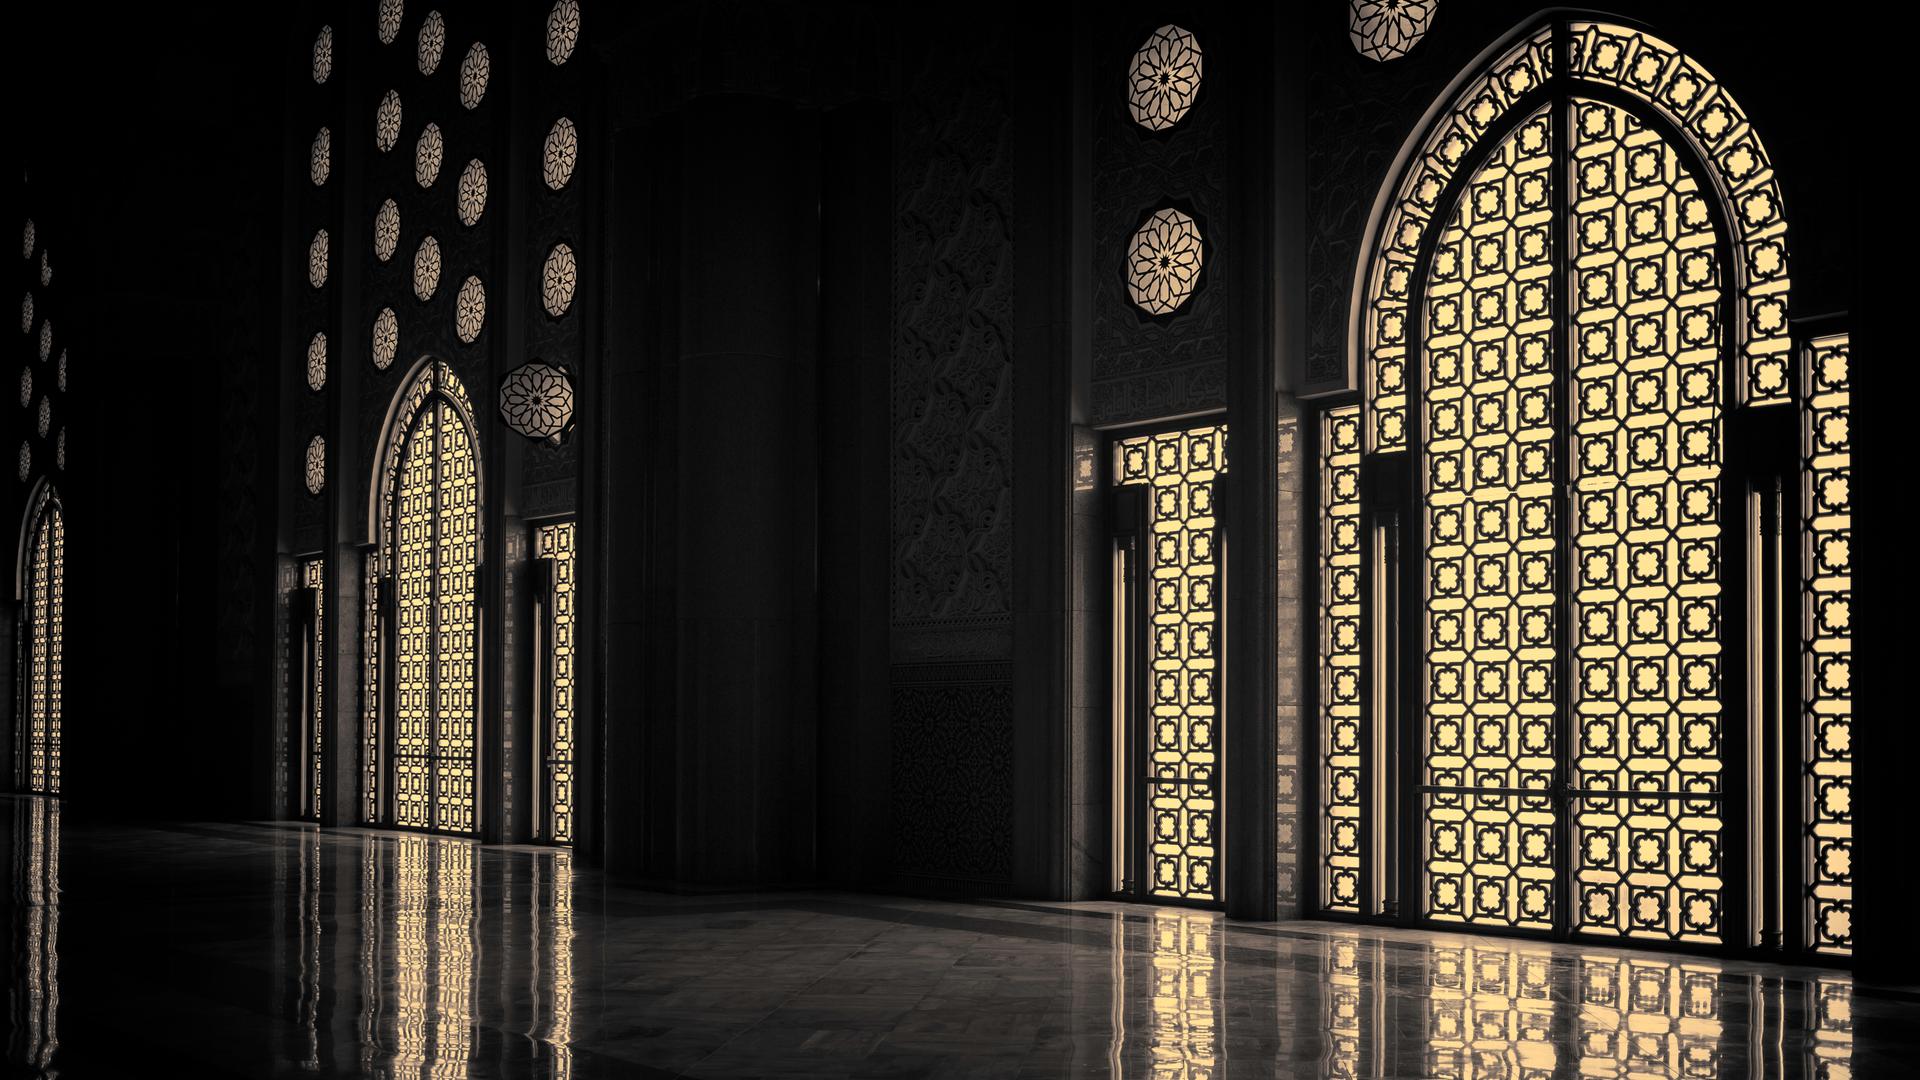 Im Inneren einer Moschee, das Licht fällt geheimnisvoll durch die reichverzierten Fenster.